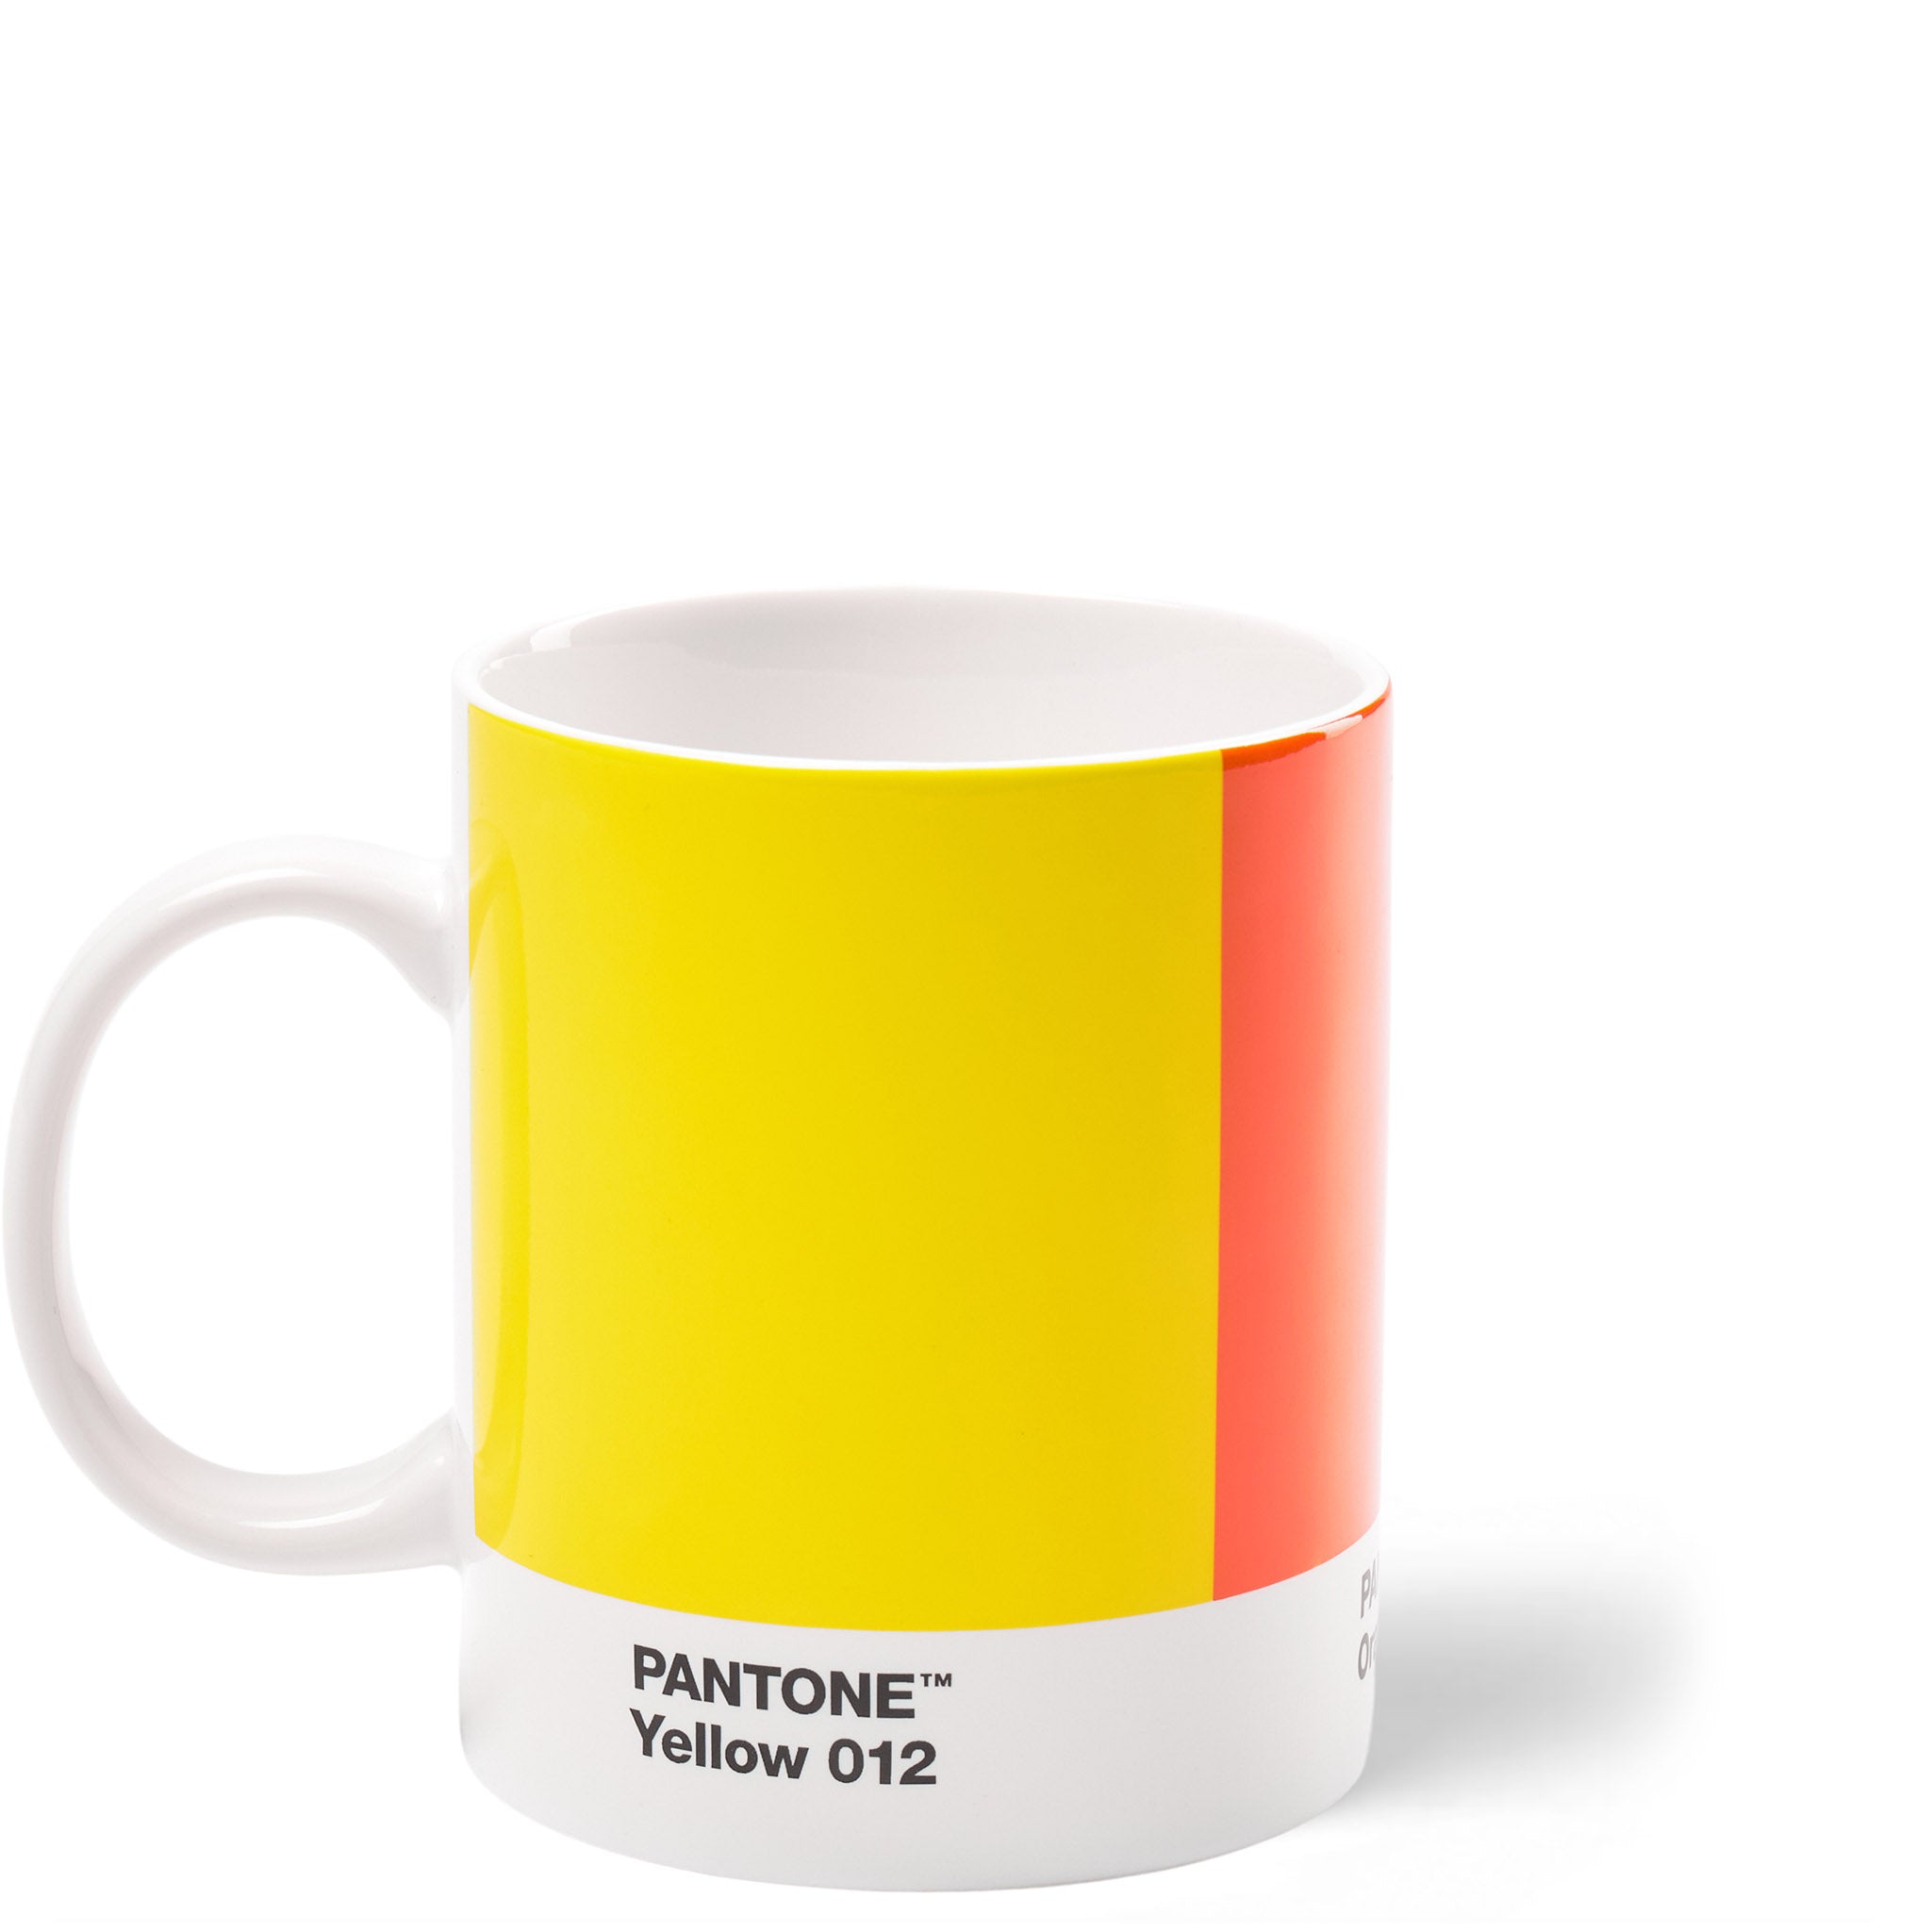 Pantone Porzellan-Becher limited Edition in den Farben Yellow 012, Orange 021 und Red 2035